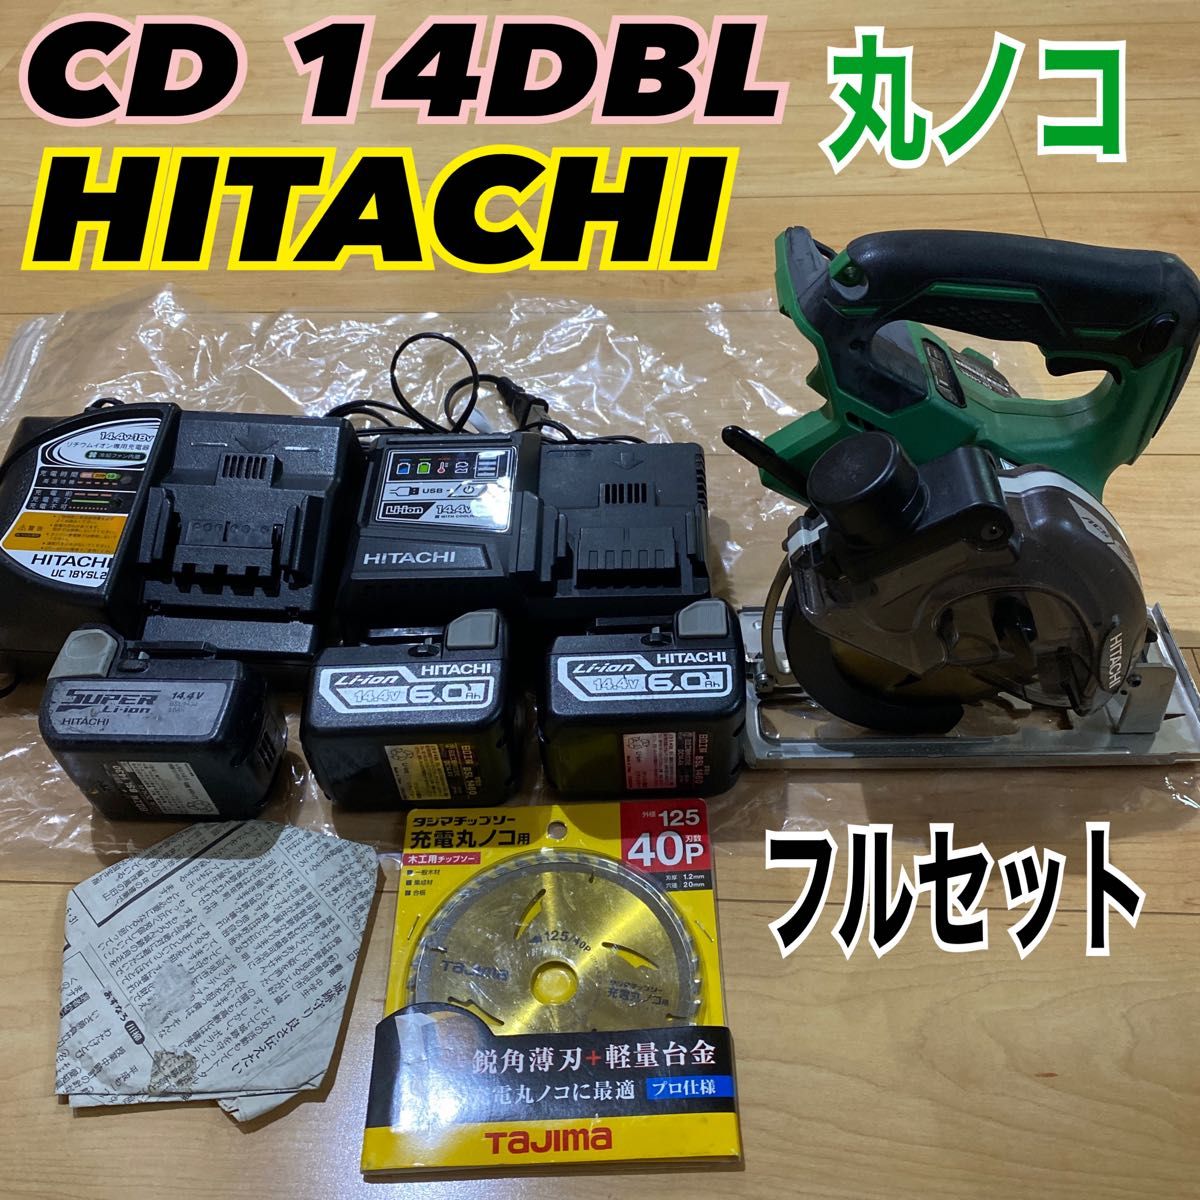 日立 ハイコーキ 丸ノコ 14.4v のこぎり CD 14DBL 工具 マキタ-